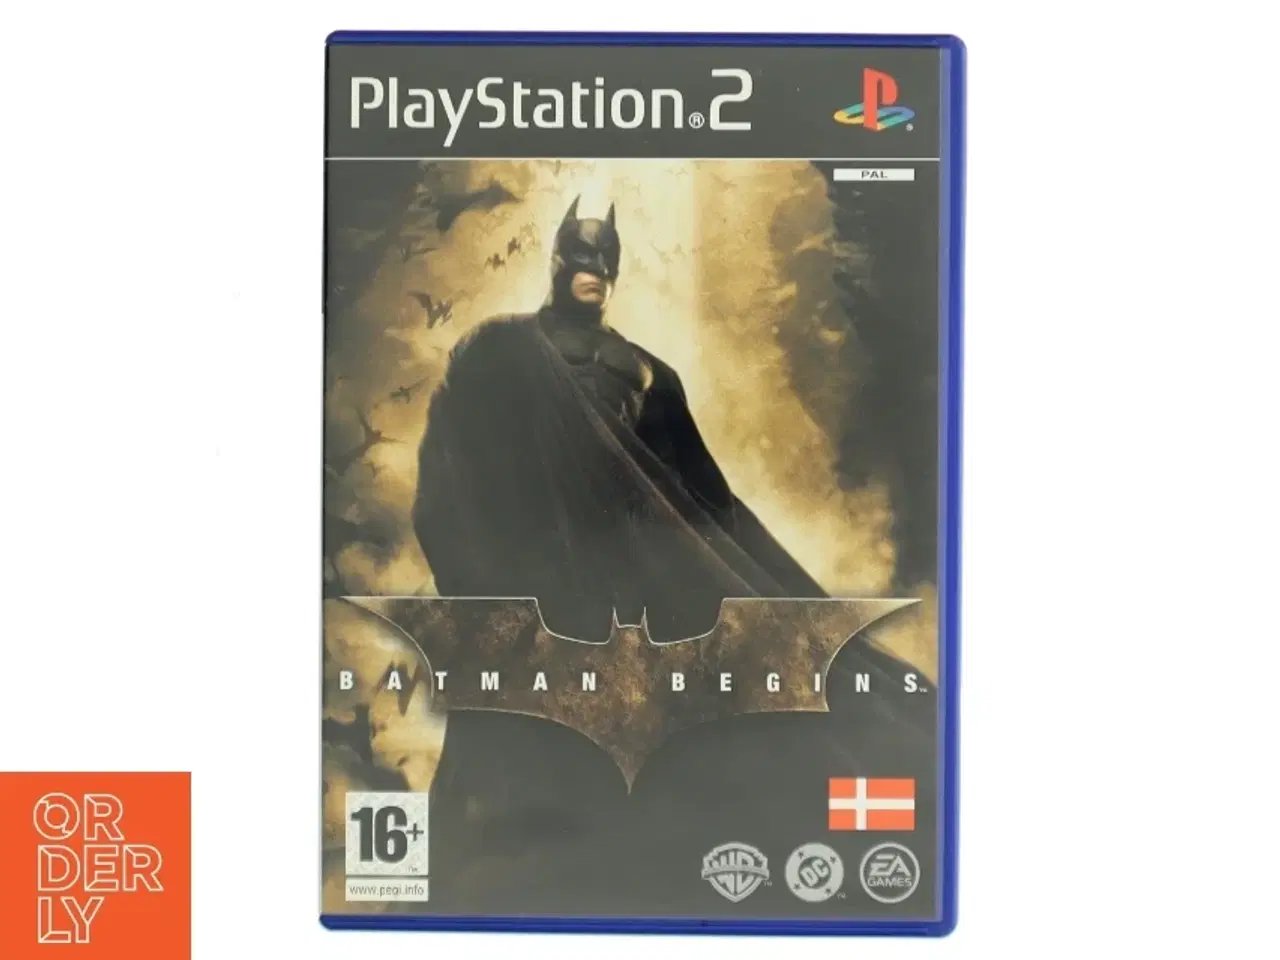 Billede 1 - Playstation 2 spil, Batman Begins fra EA Games